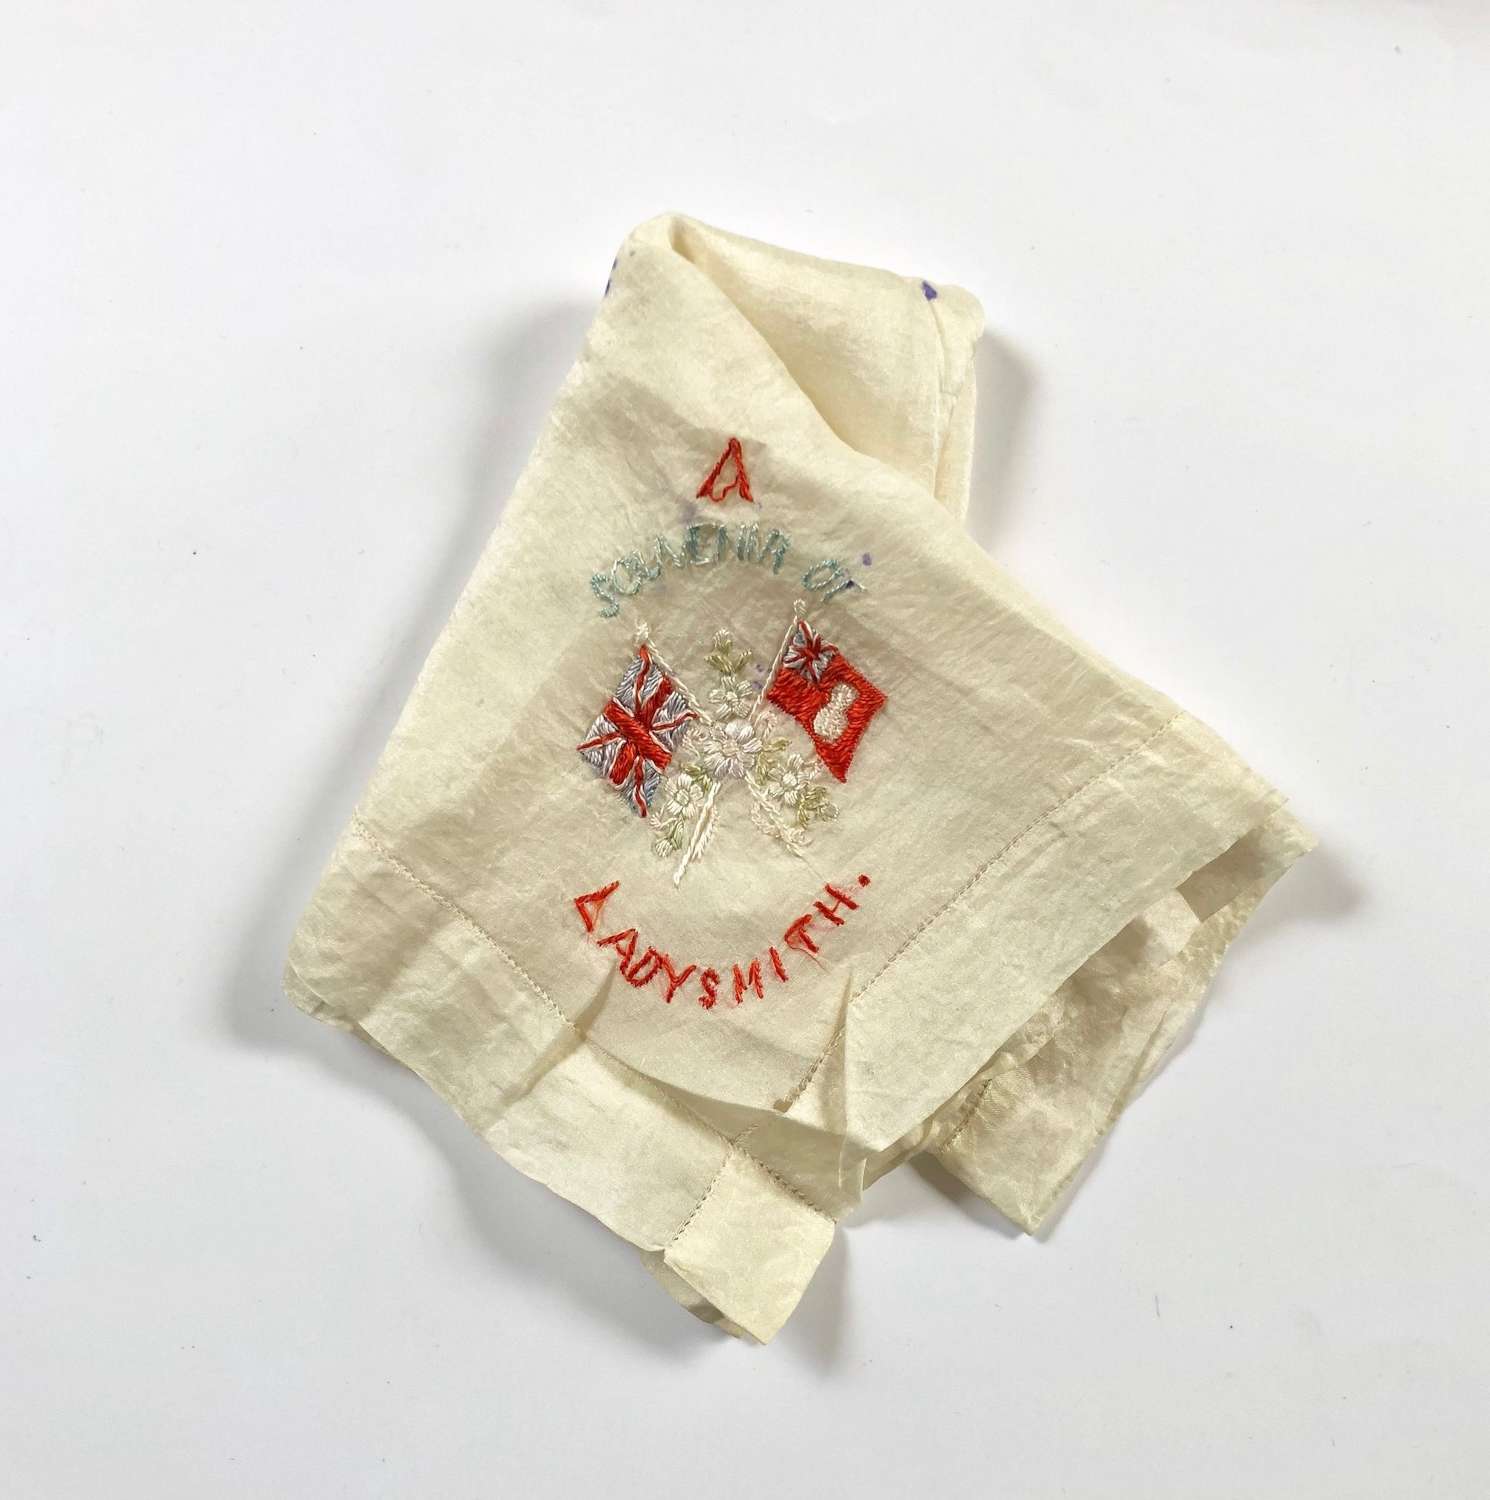 Boer War souvenir of Ladysmith Handkerchief.